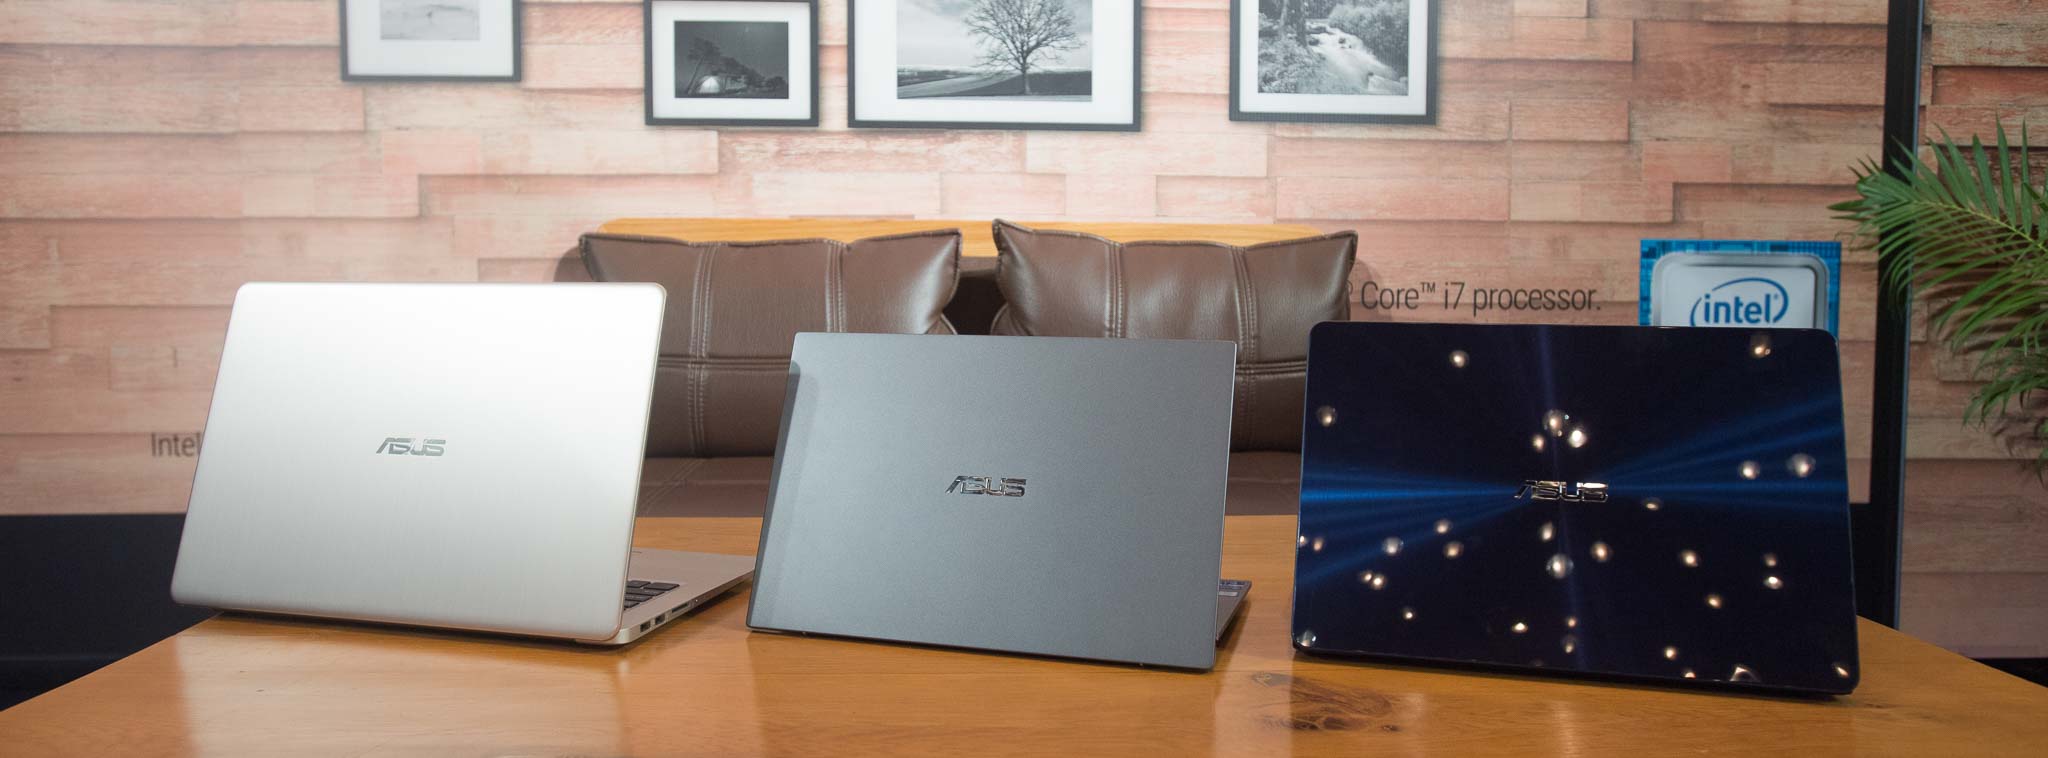 Asus ra mắt ASUSPRO B9440 32tr, VivoBook S15 12.5 triệu và Zenbook UX430 20 triệu, đều là viền mỏng